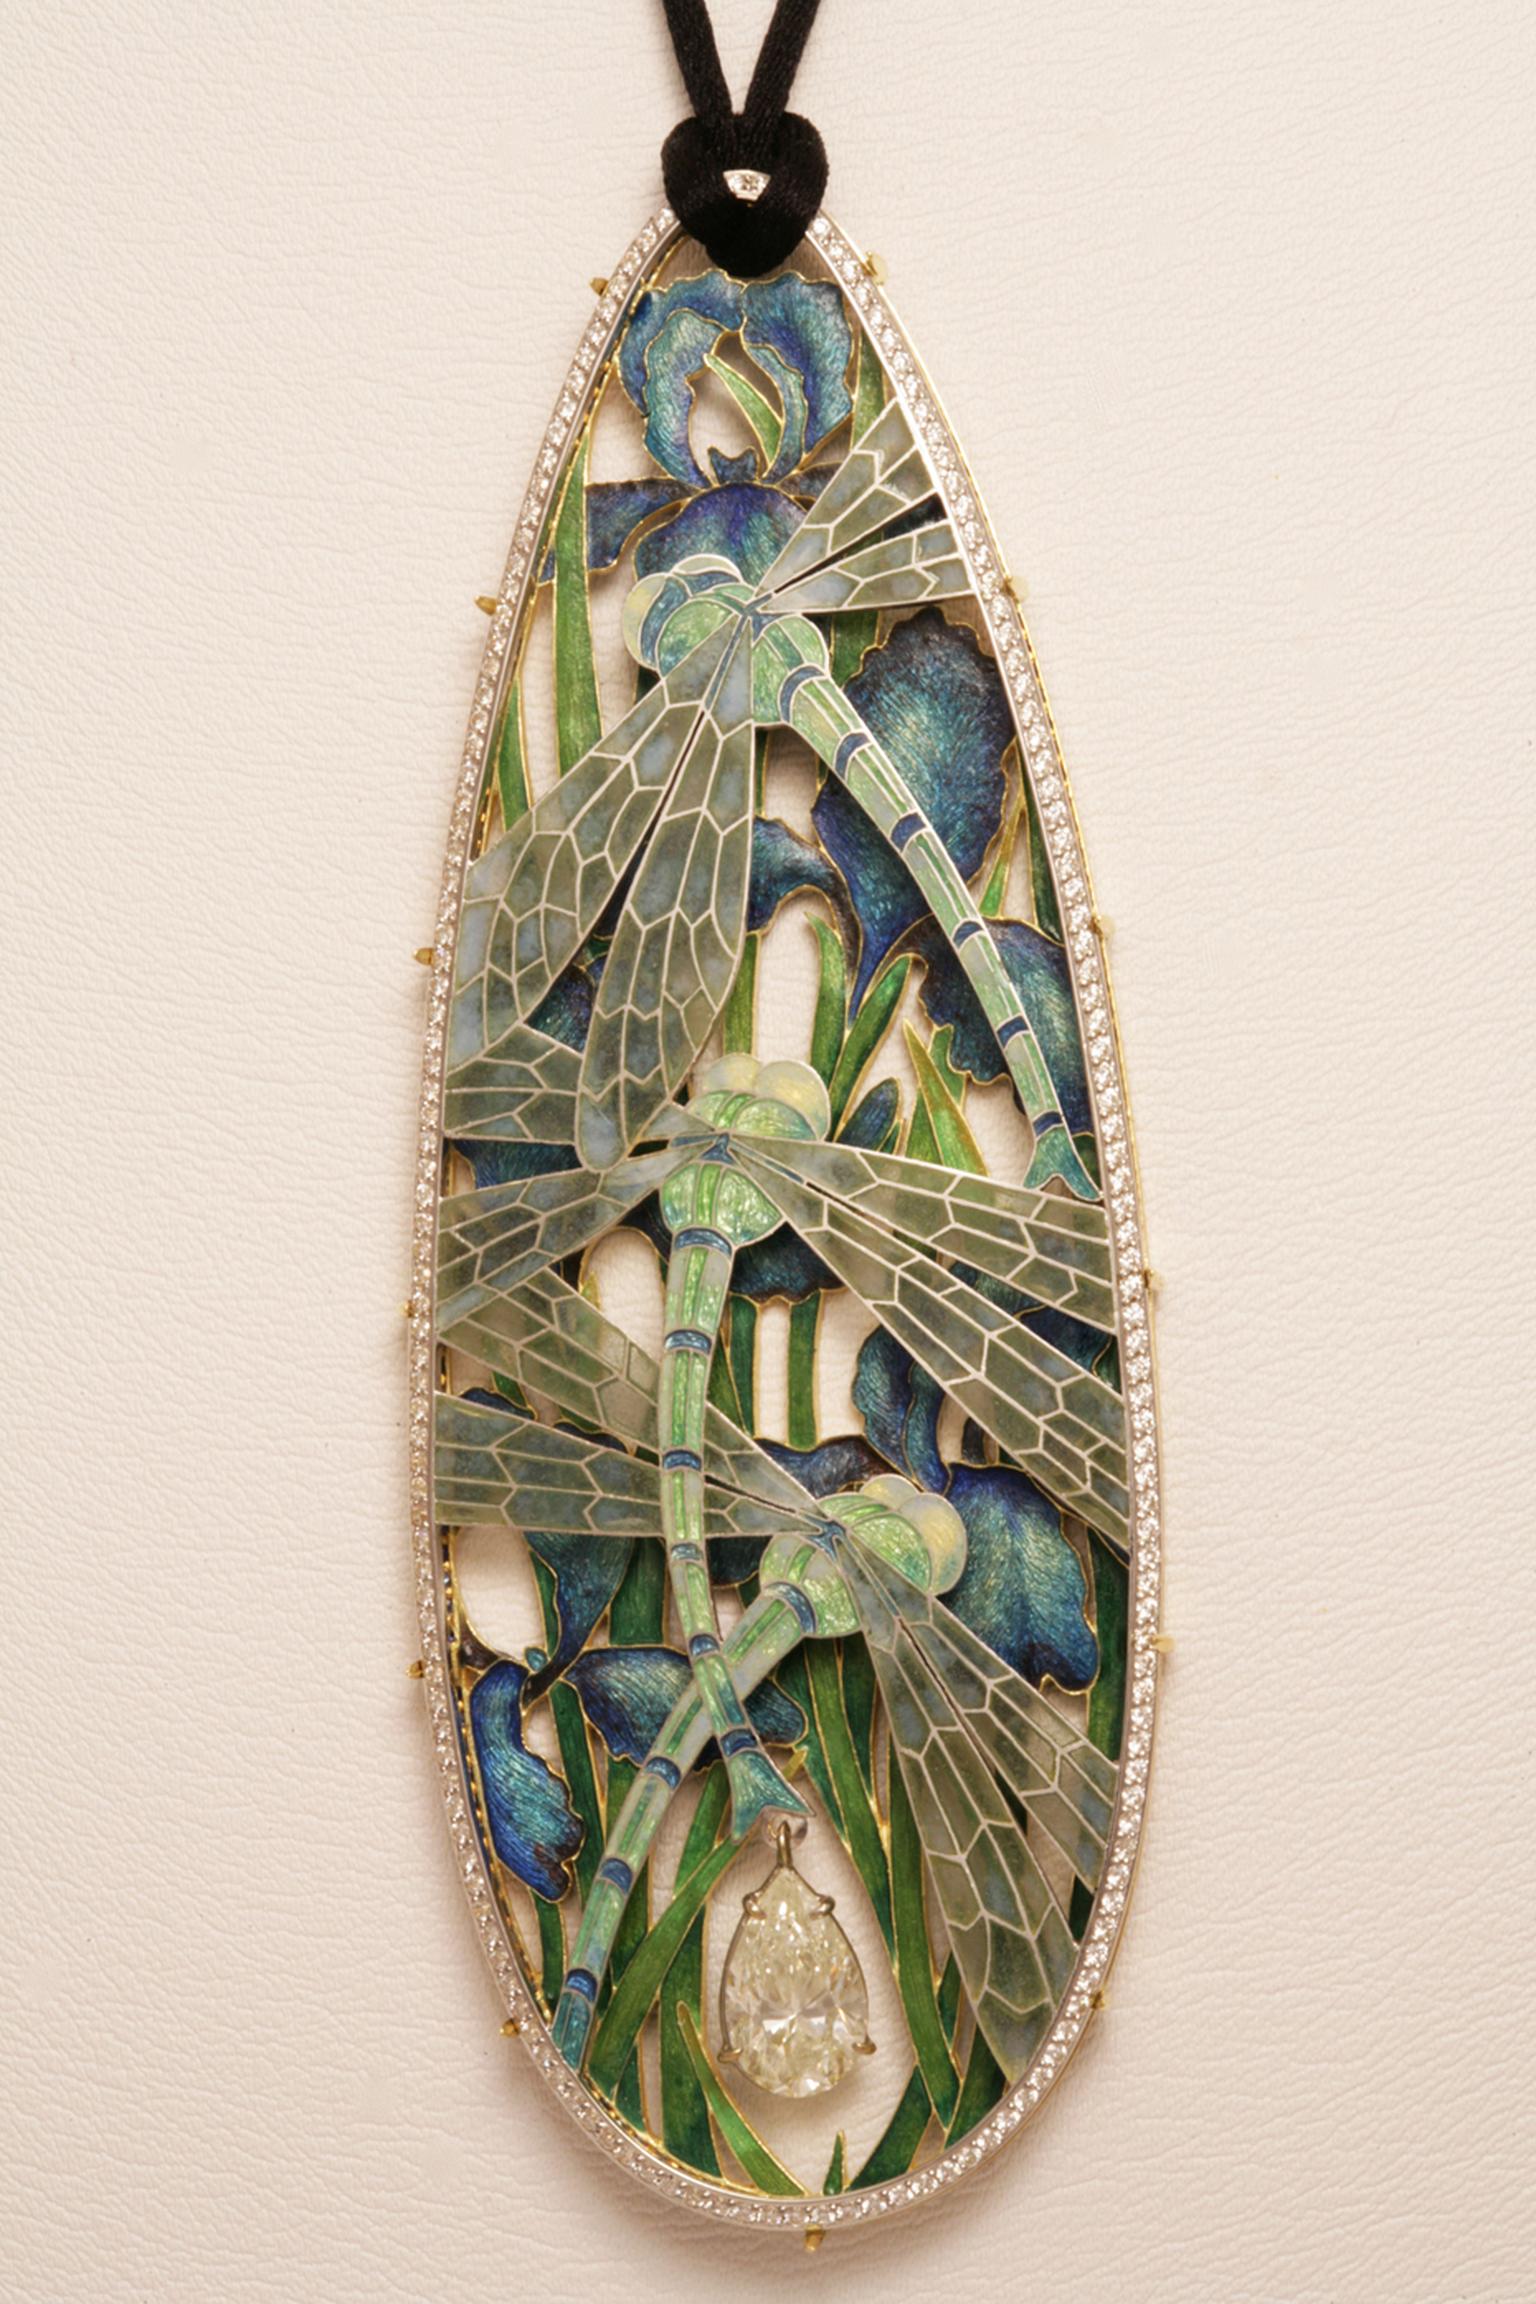 Ilgiz F "Dragonfly" pendant with plique-à-jour enamelling